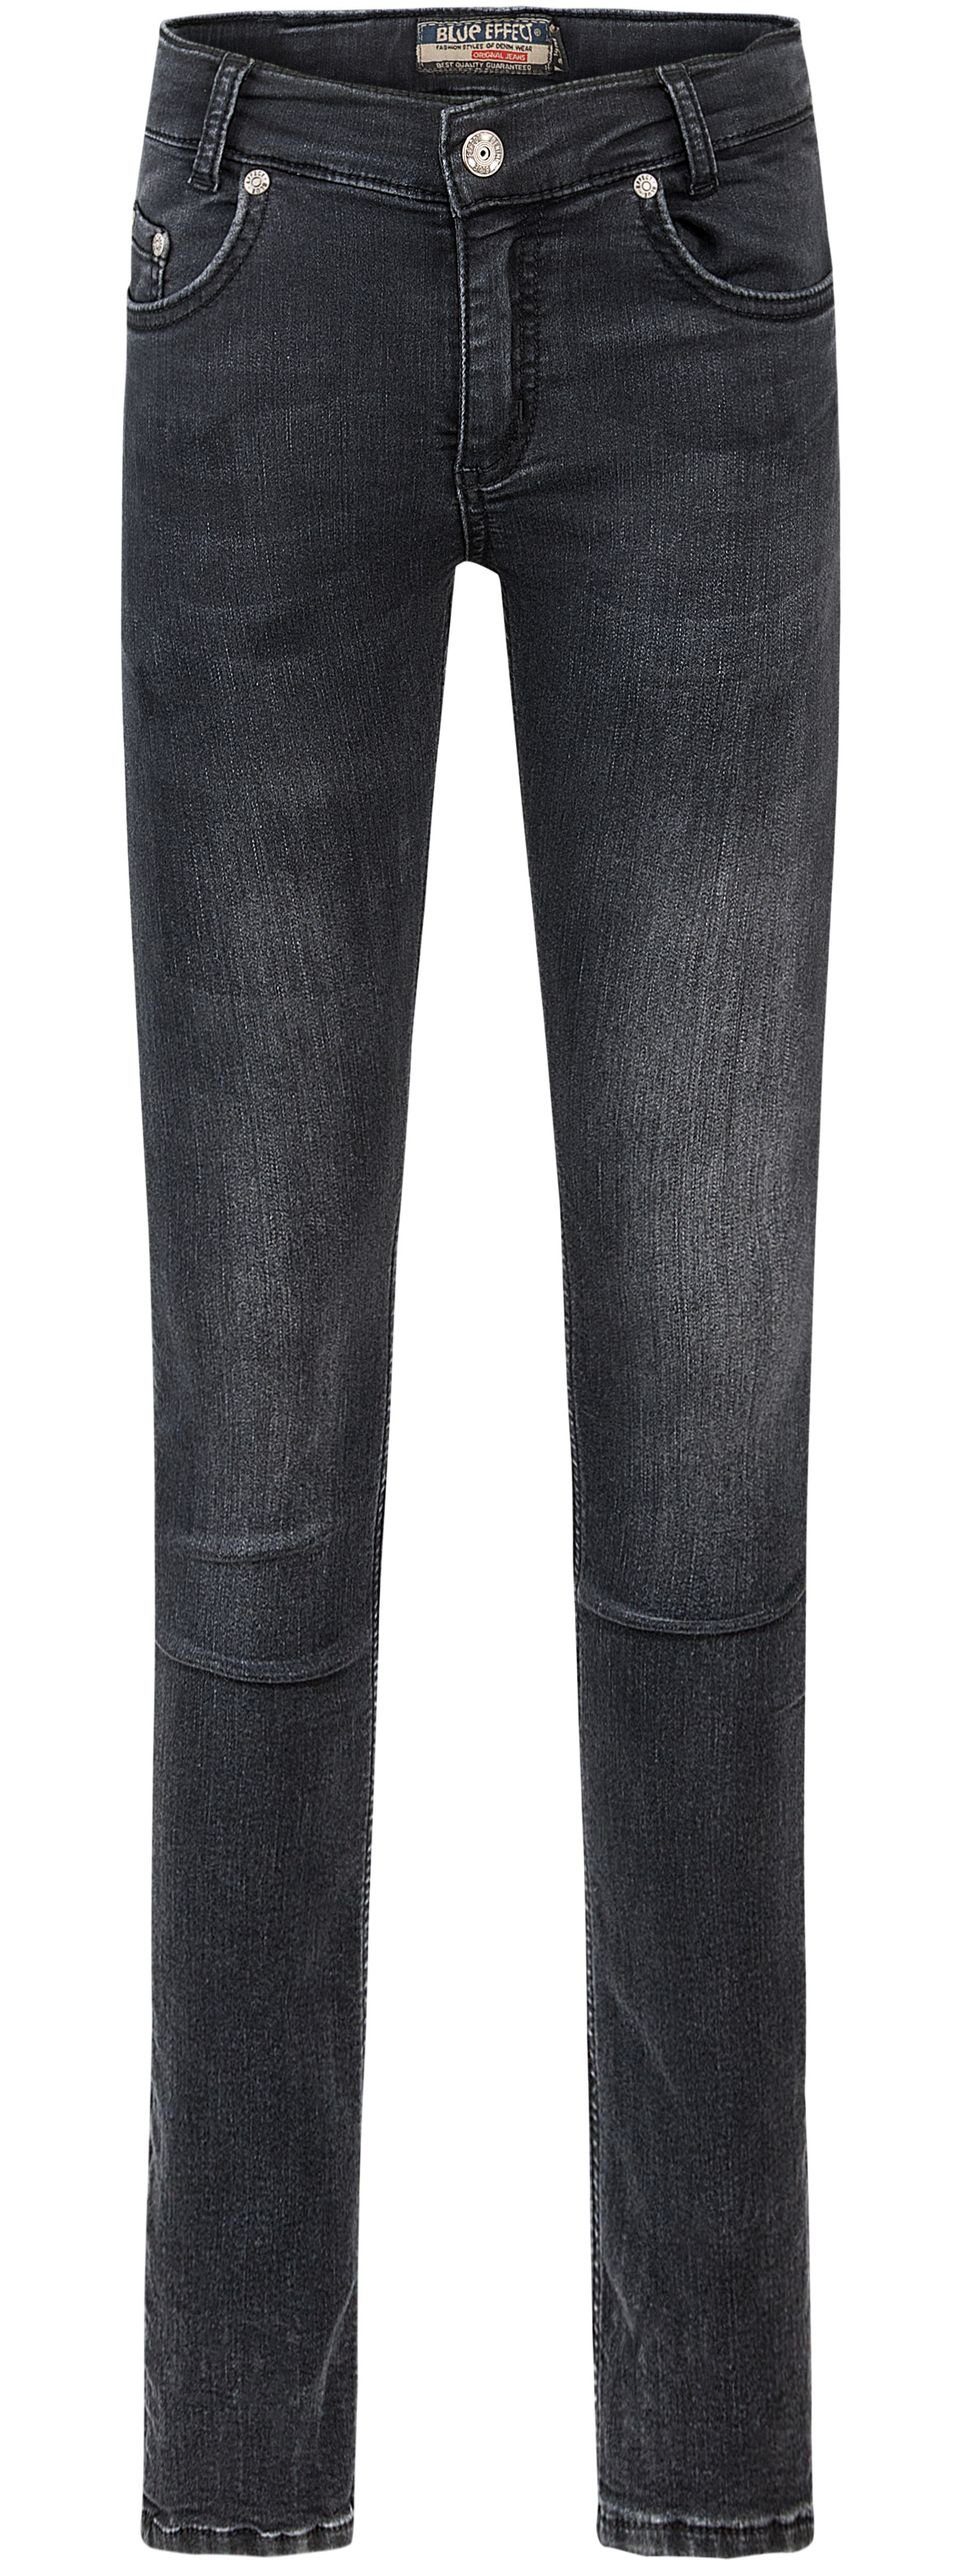 BLUE EFFECT Slim-fit-Jeans Jeans Hose Skinny ultrastretch slim fit black